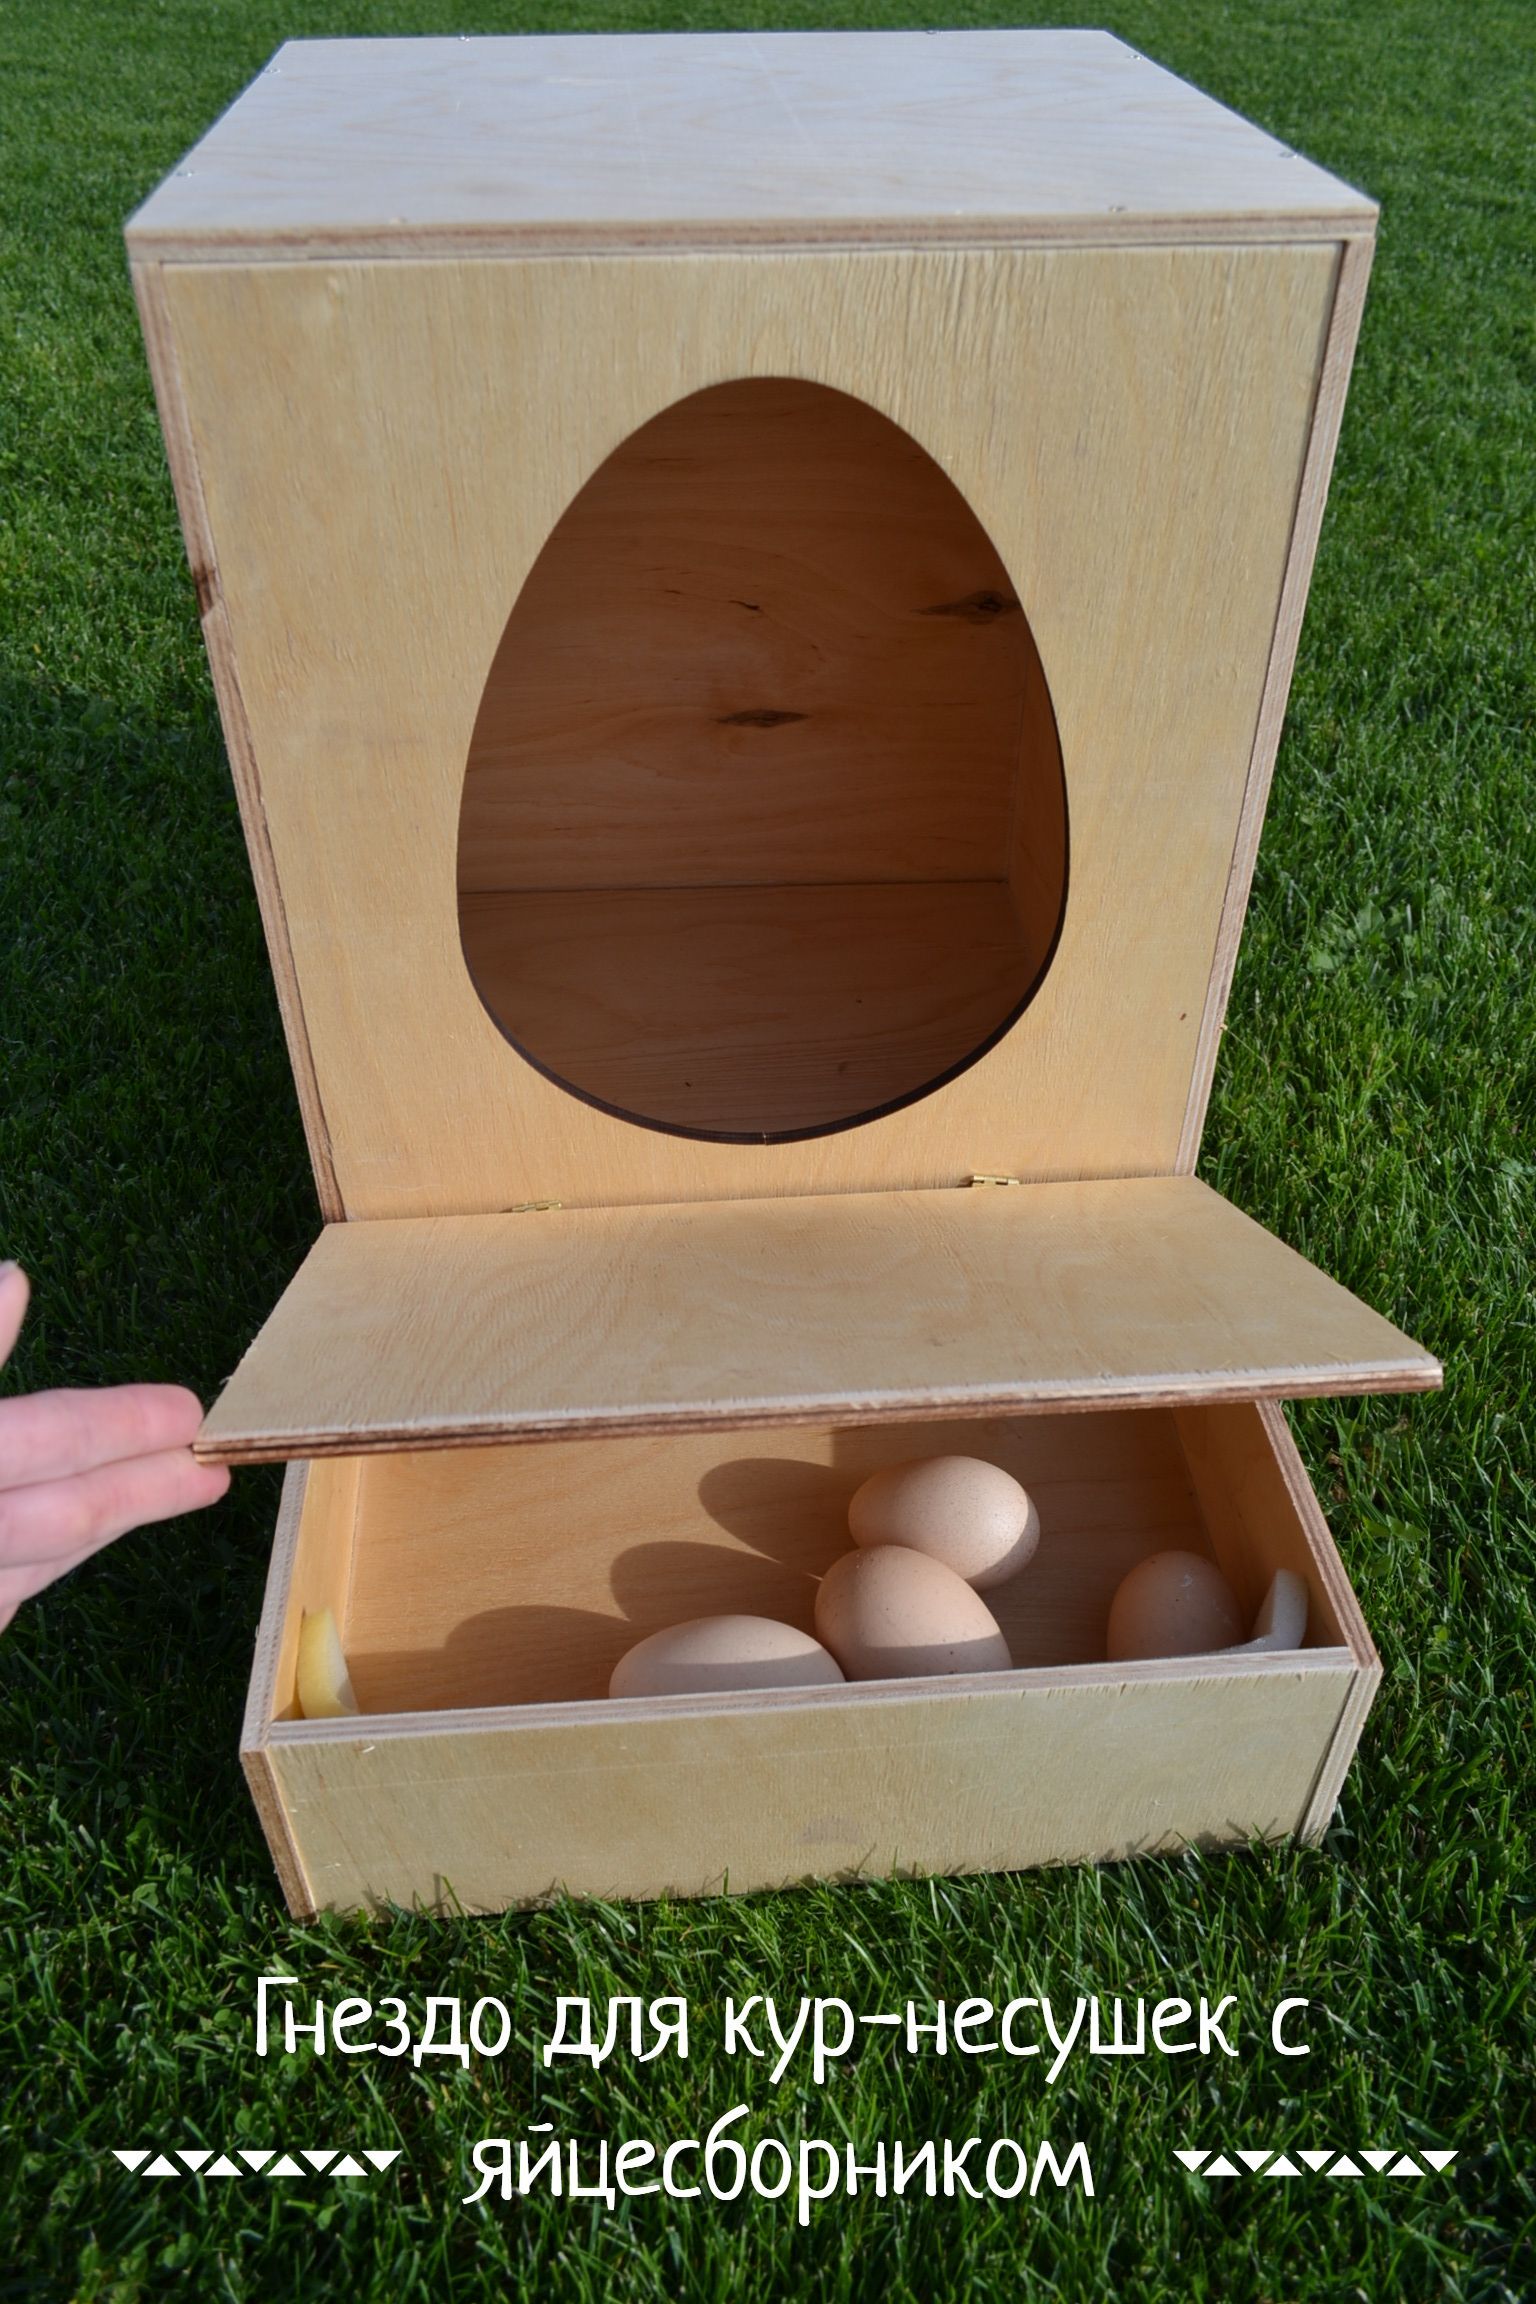 Гнездо для кур несушек с яйцесборником - простая забота о завтрашней прибыли!